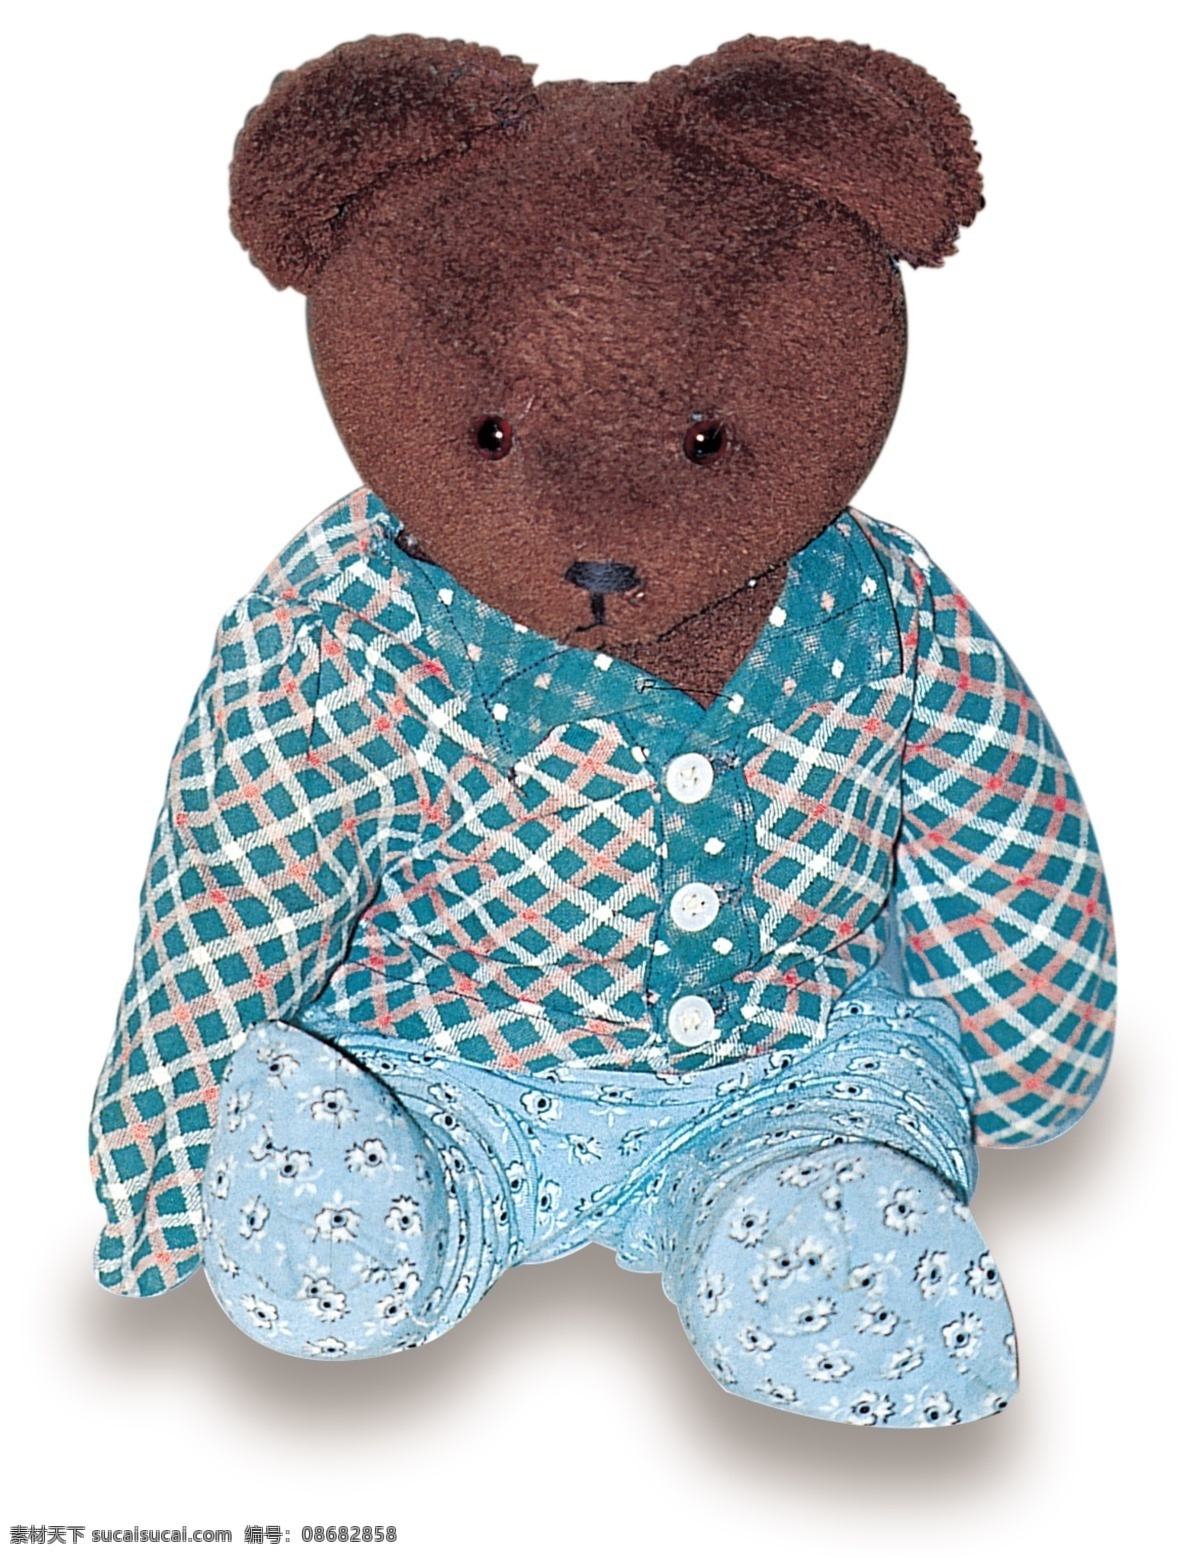 欧洲 小 玩具 熊 毛绒 布袋熊 小布熊 布娃娃 生活素材 生活百科